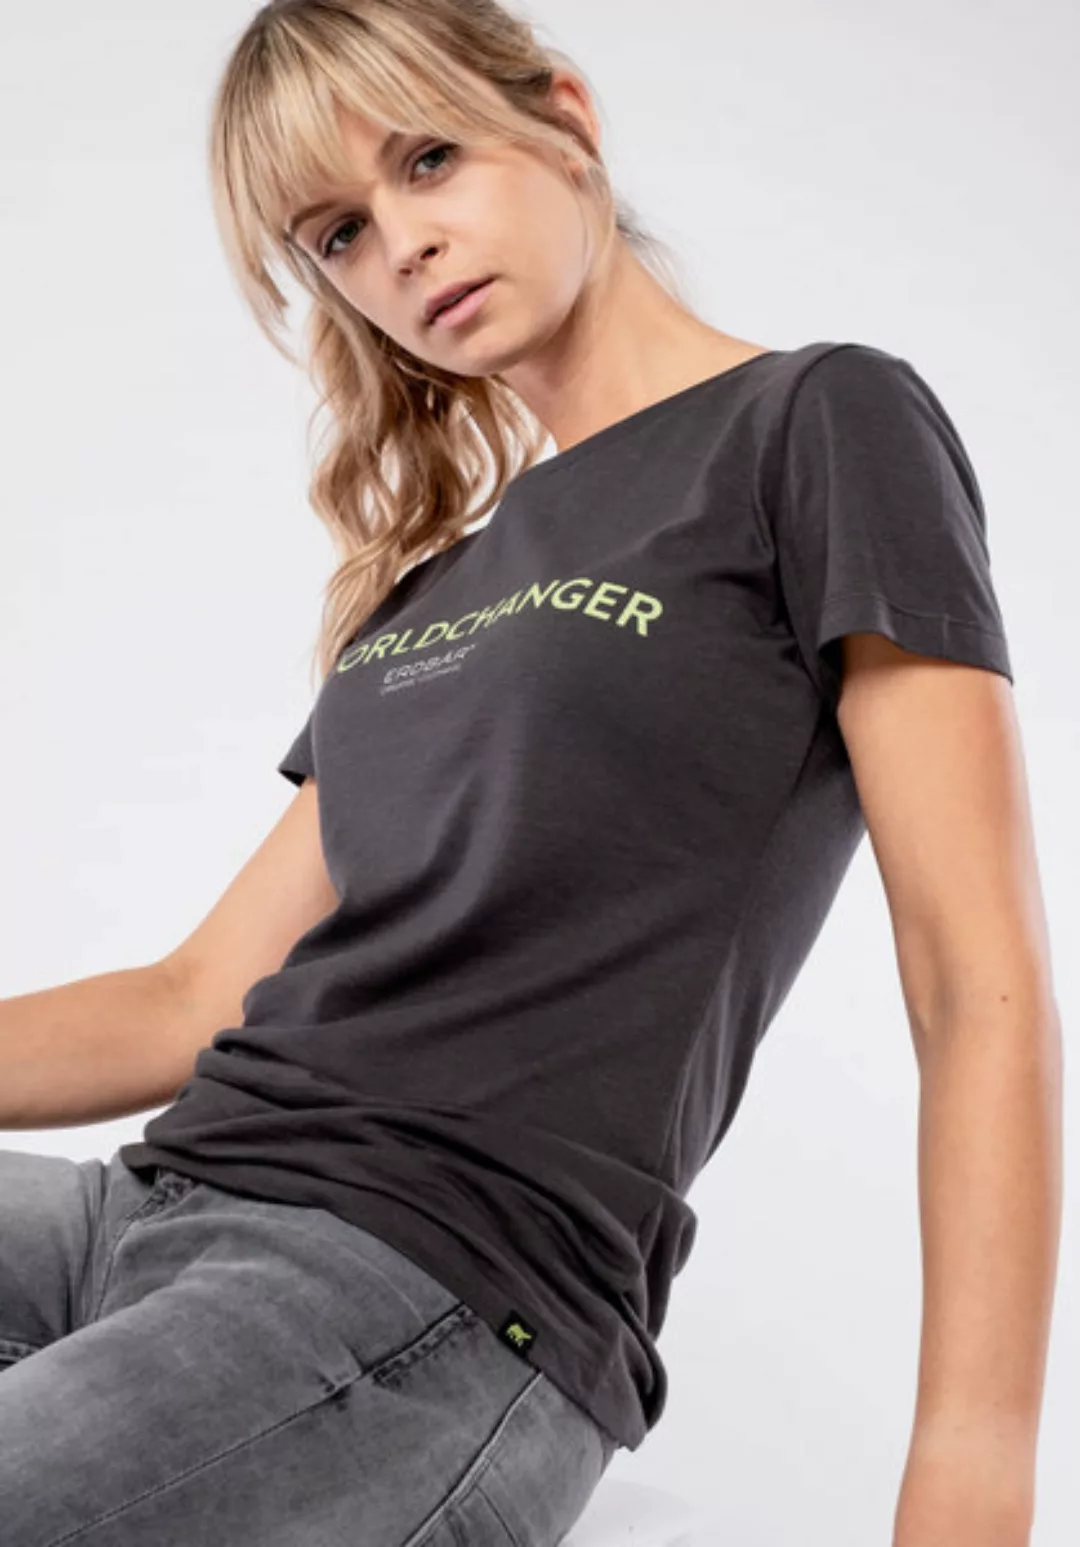 Damen T-shirt #Worldchanger günstig online kaufen